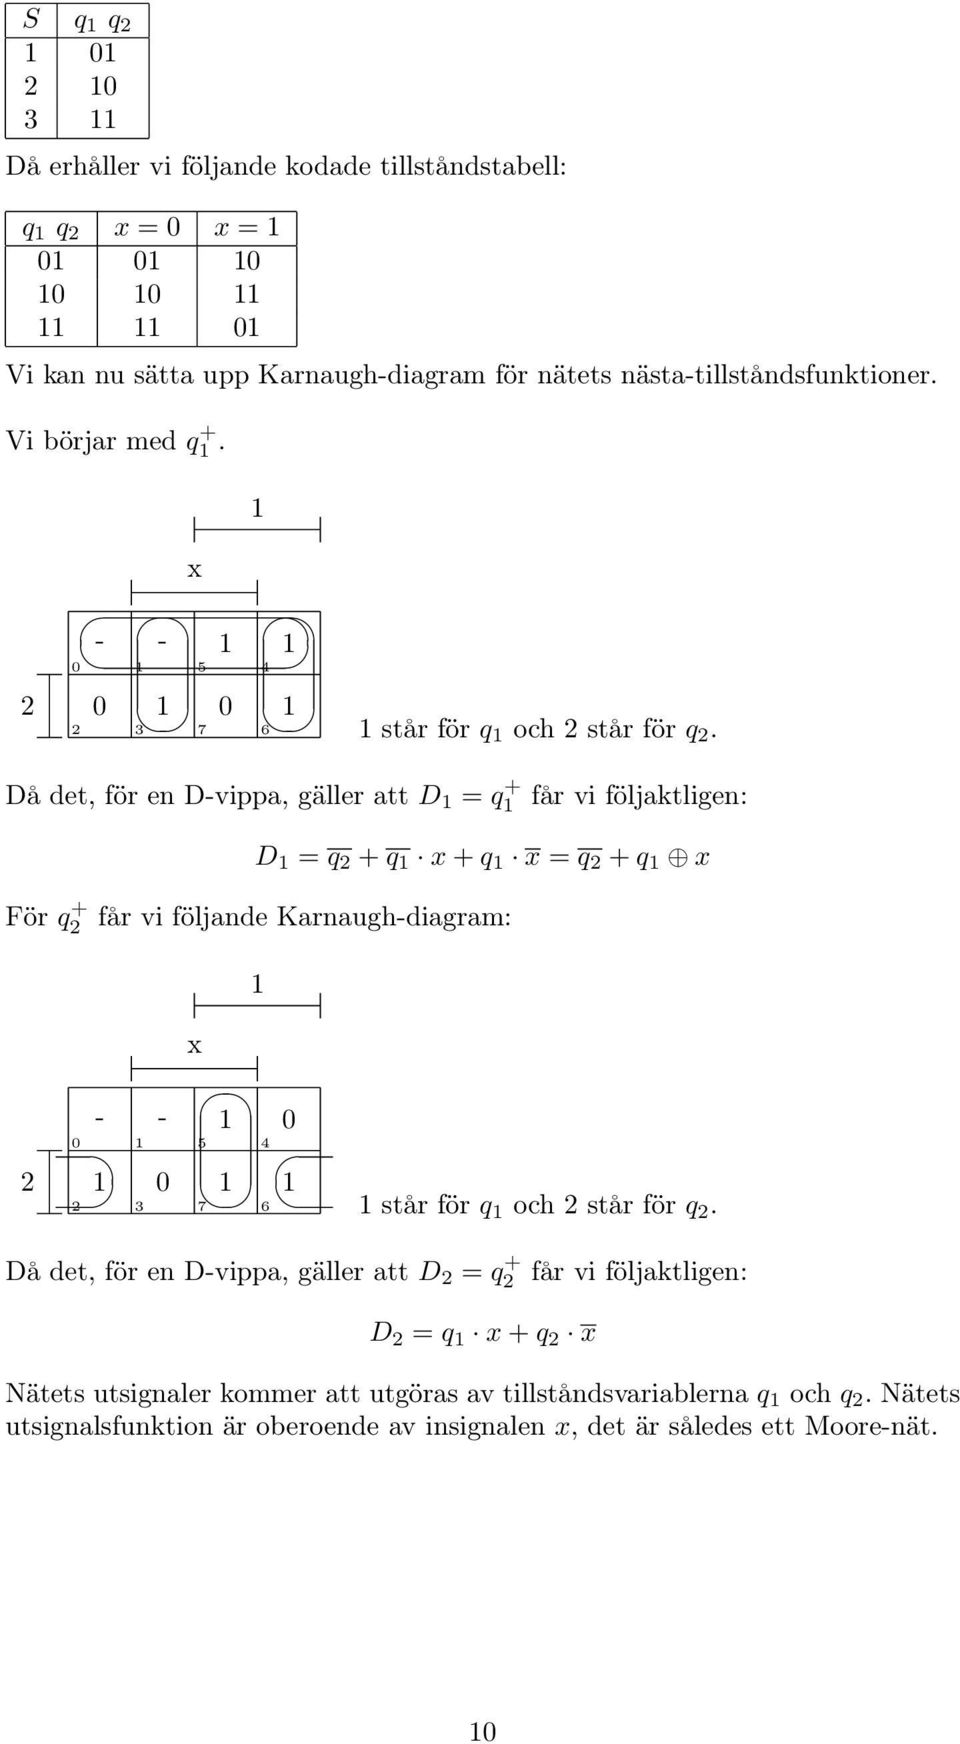 Då det, för en D-vippa, gäller att D = q + får vi följaktligen: D = q + q x + q x = q + q x För q + får vi följande Karnaugh-diagram: x - - 3 5 4 7 6 står